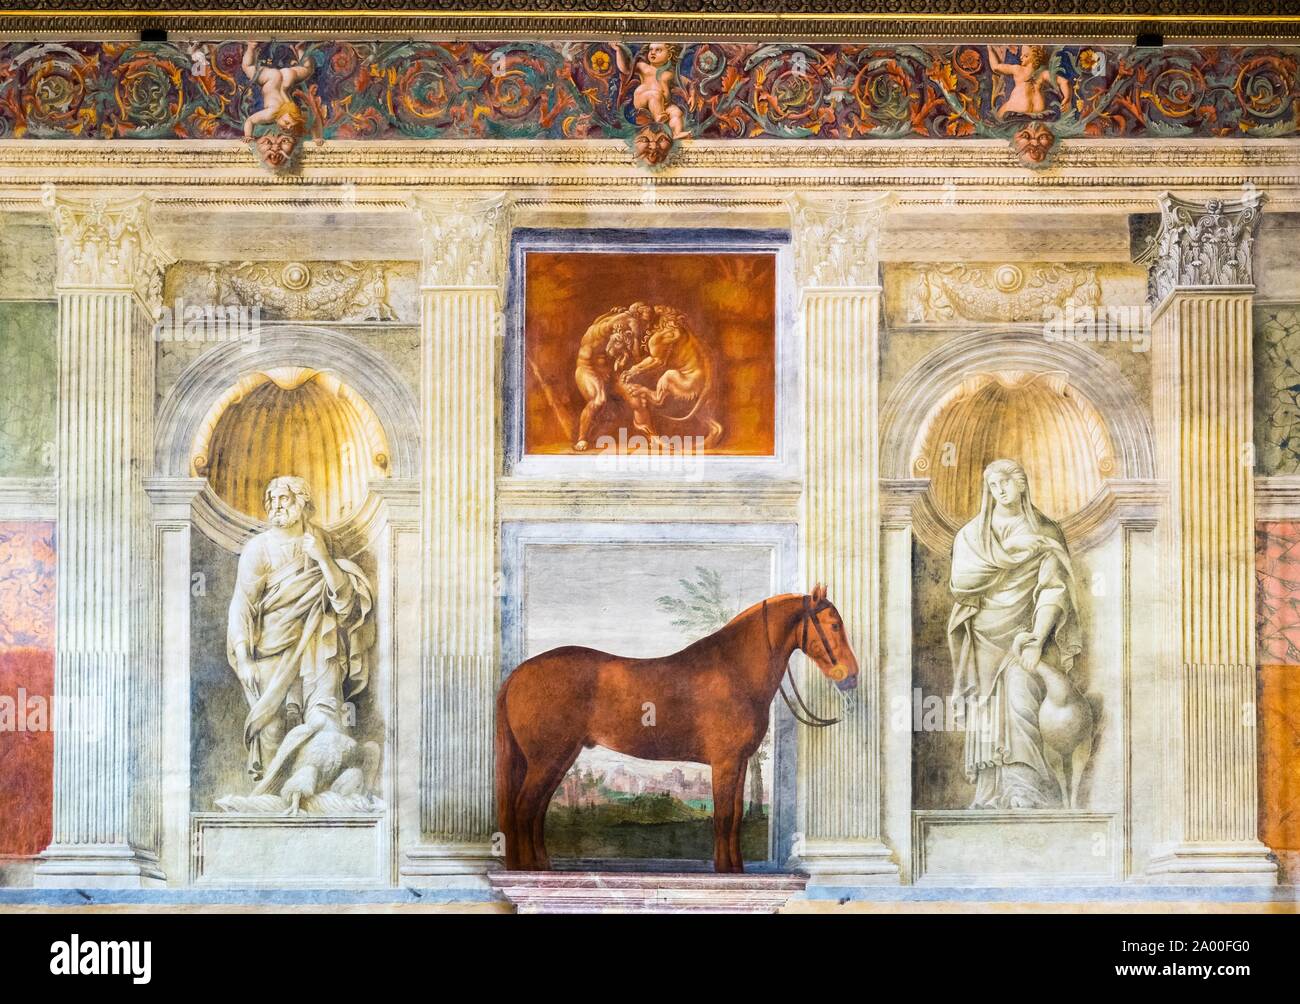 Représentation des chevaux dans la Sala dei Cavalli, Hall de chevaux, fresque de Giulio Romano, Palazzo Te château de plaisance, Mantoue, Lombardie, Italie Banque D'Images